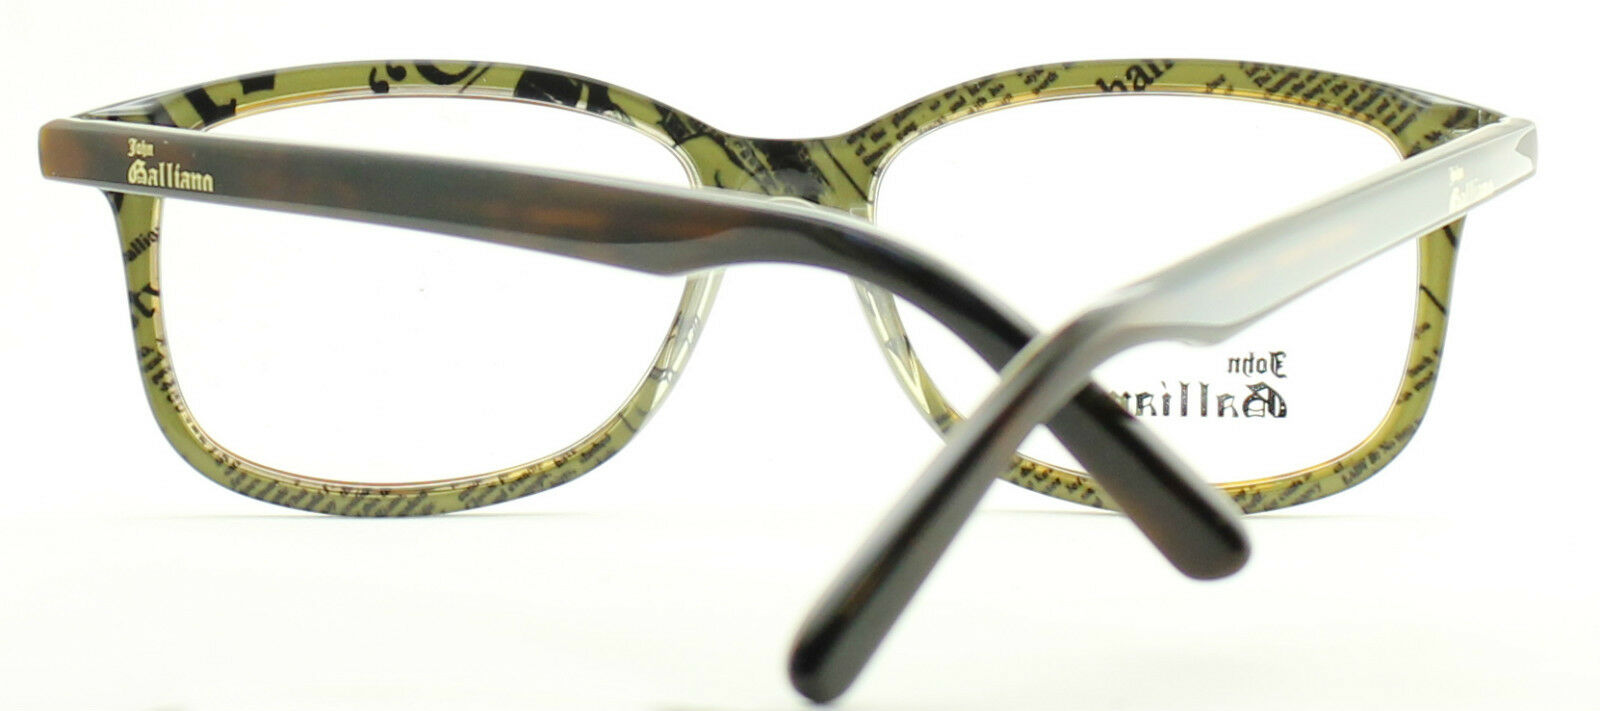 JOHN GALLIANO JG5011 col.056 Eyewear RX Optical FRAMES NEW Eyeglasses - BNIB